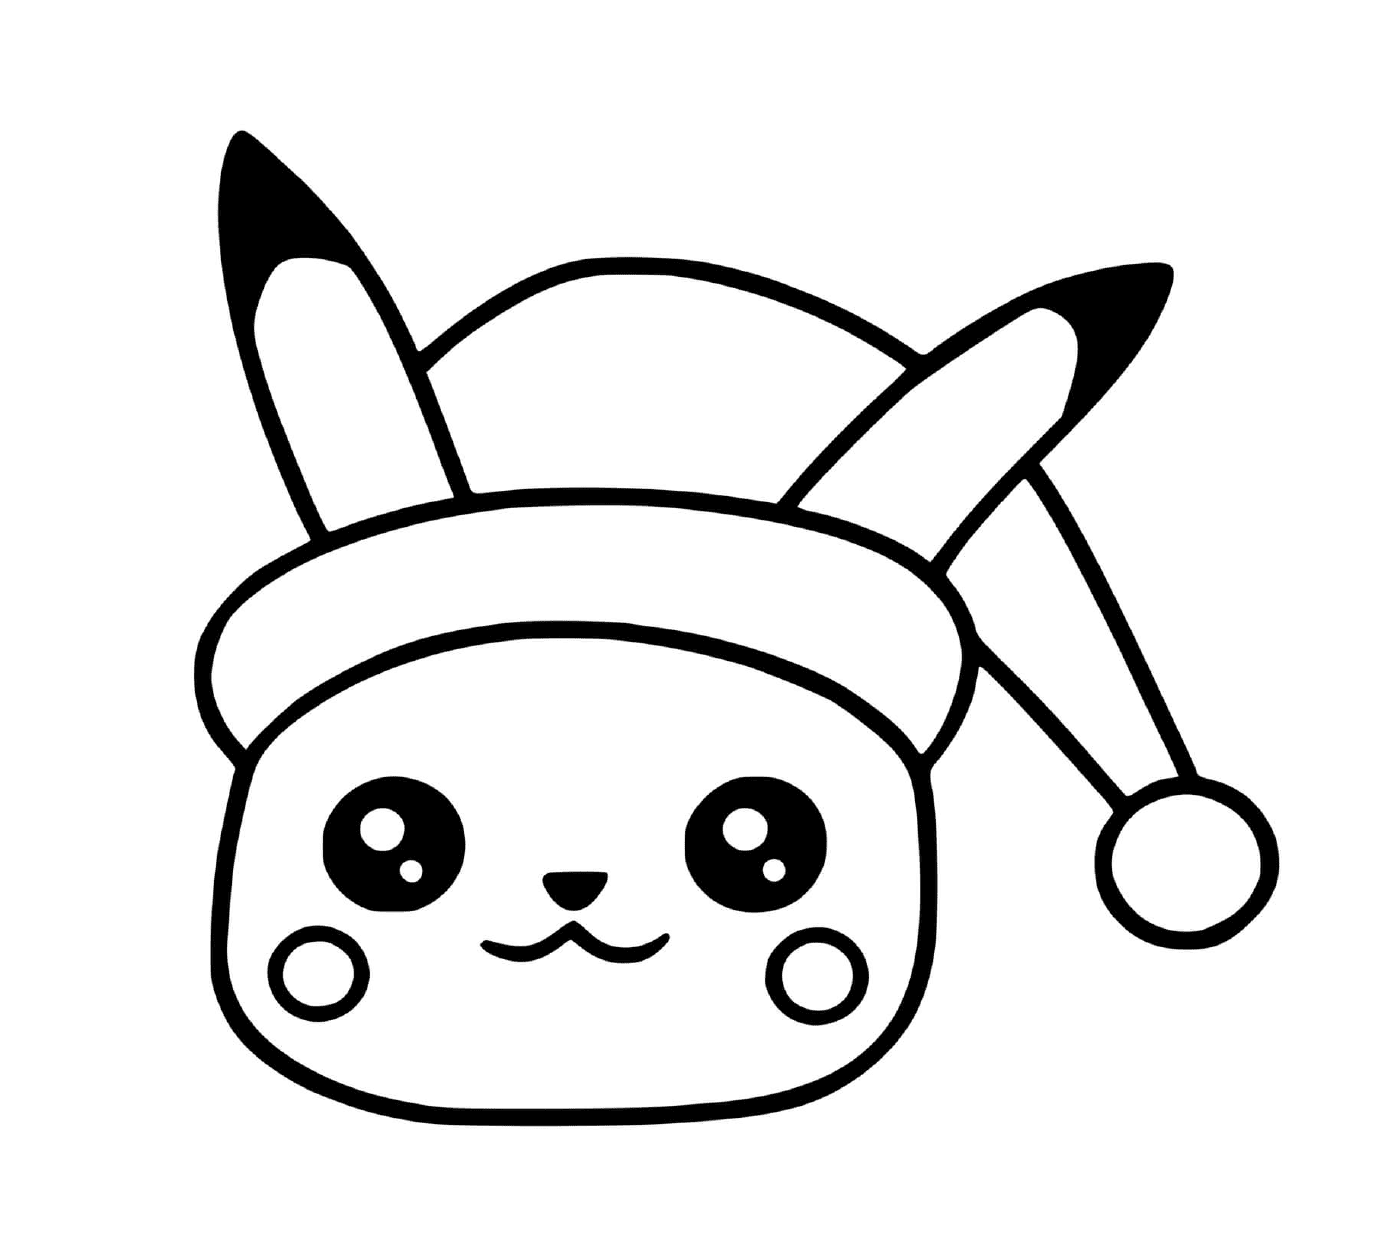  Pikachu Navidad, kawaii y festivo 